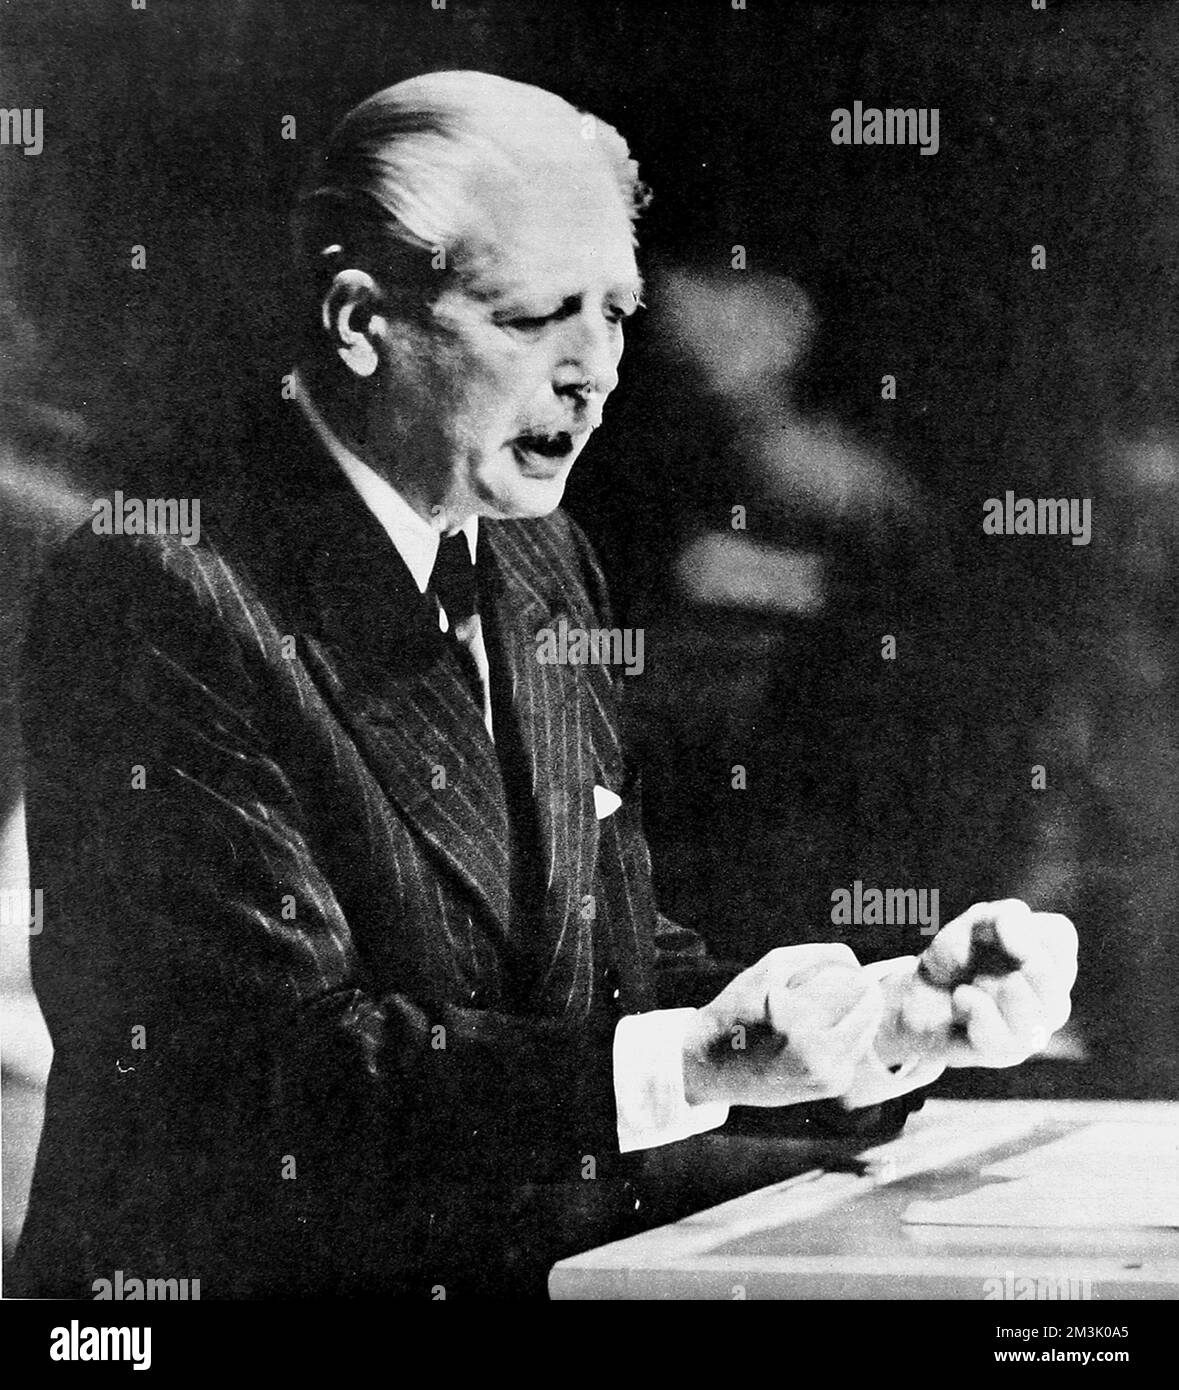 (Maurice) Harold Macmillan s'exprimant devant l'Assemblée générale des Nations Unies, le 29th septembre 1960. Dans un discours puissant, le Premier ministre britannique a parlé du passé colonial britannique ainsi que des conditions et des possibilités de désarmement de la Guerre froide. 1960 Banque D'Images